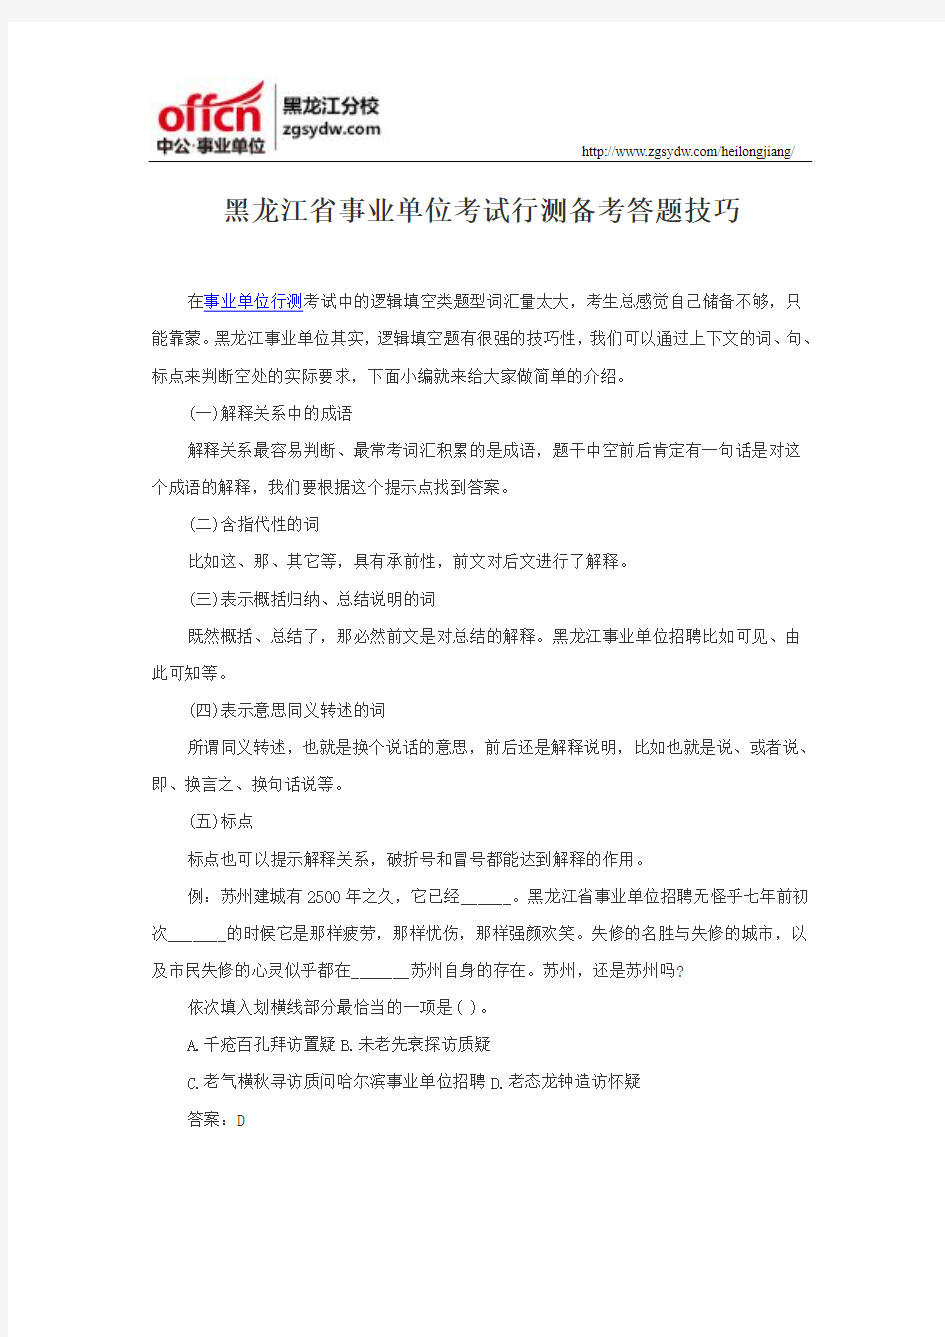 黑龙江省事业单位考试行测备考答题技巧